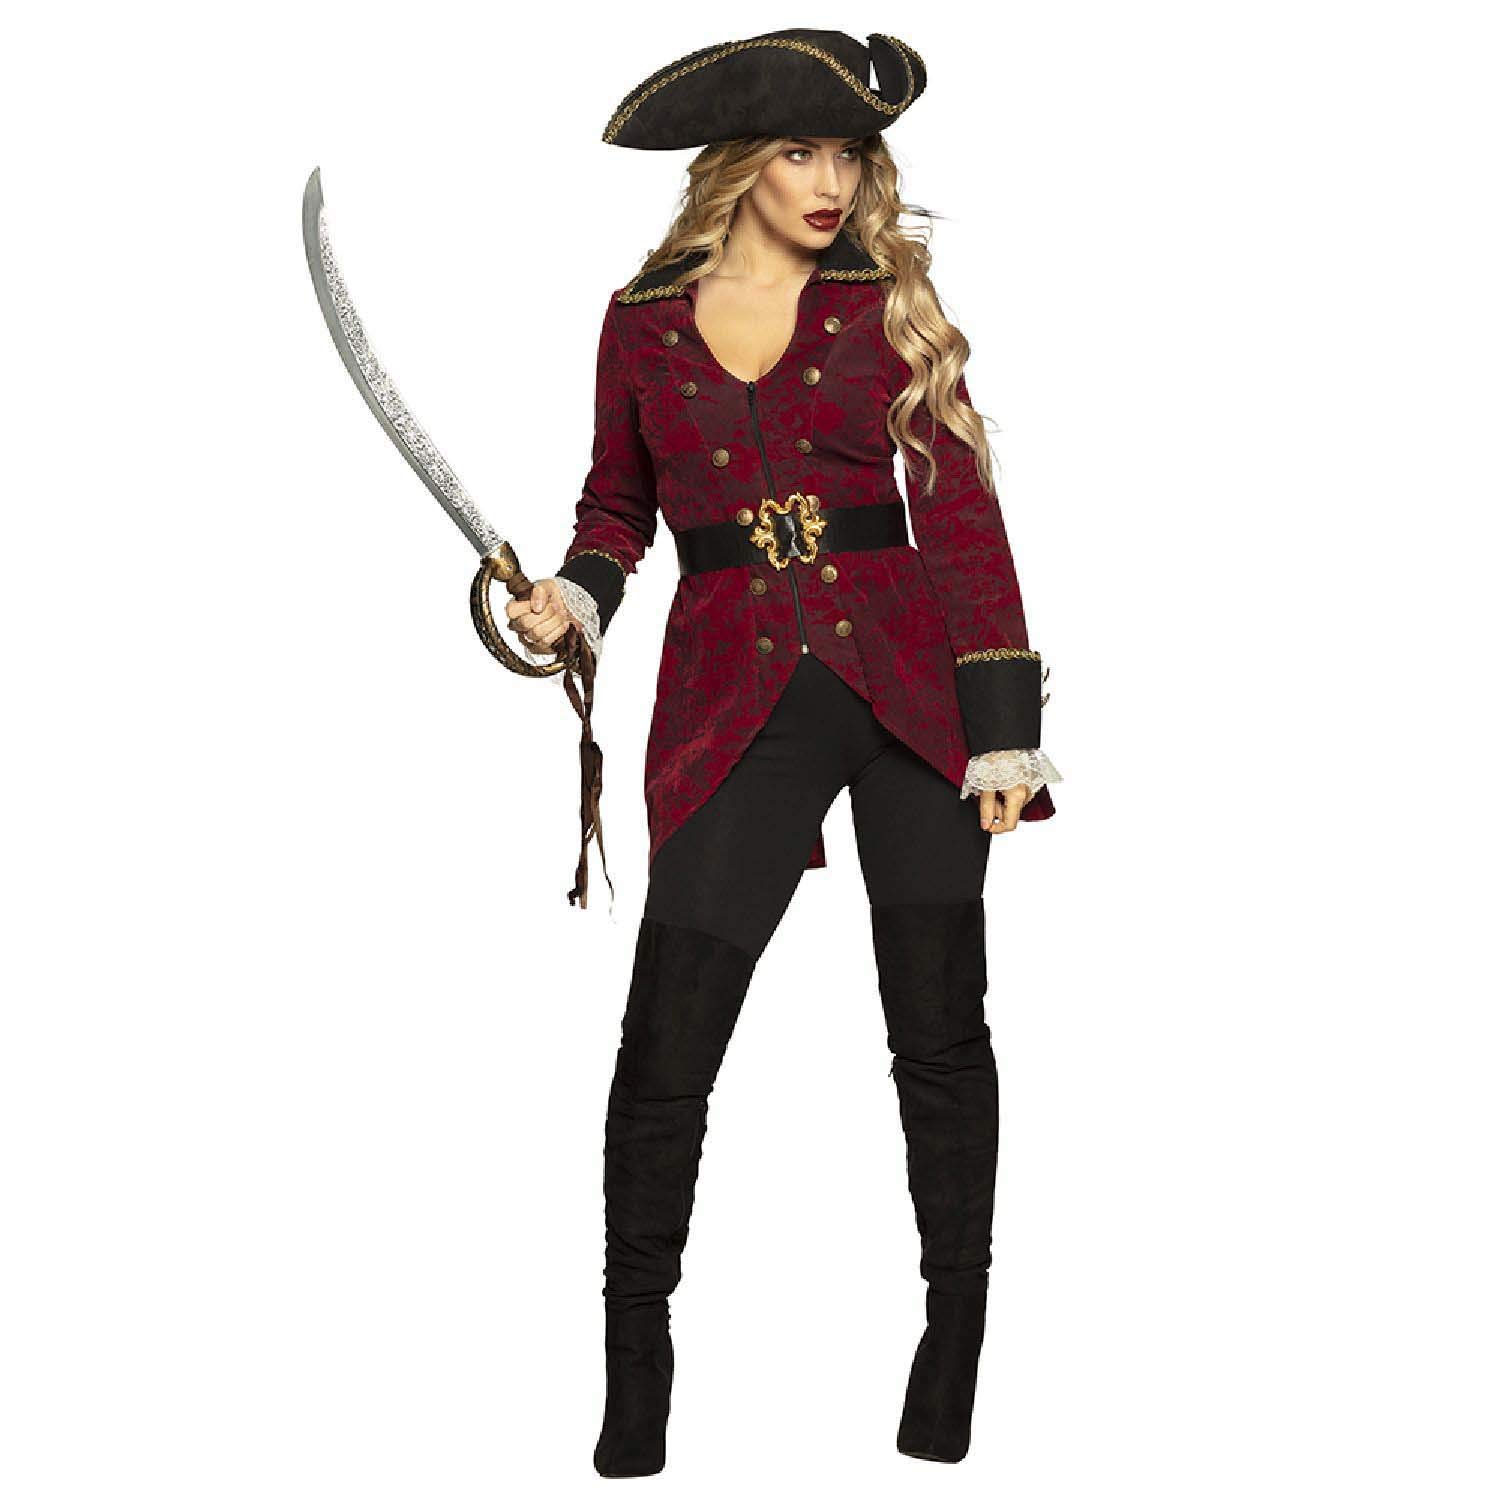 Boland 83770 - Kostüm Piratin Hurricane, Mantel, Hut und Gürtel, für Damen, Seefahrer, Seeräuber, Verkleidung, Karneval, Mottoparty